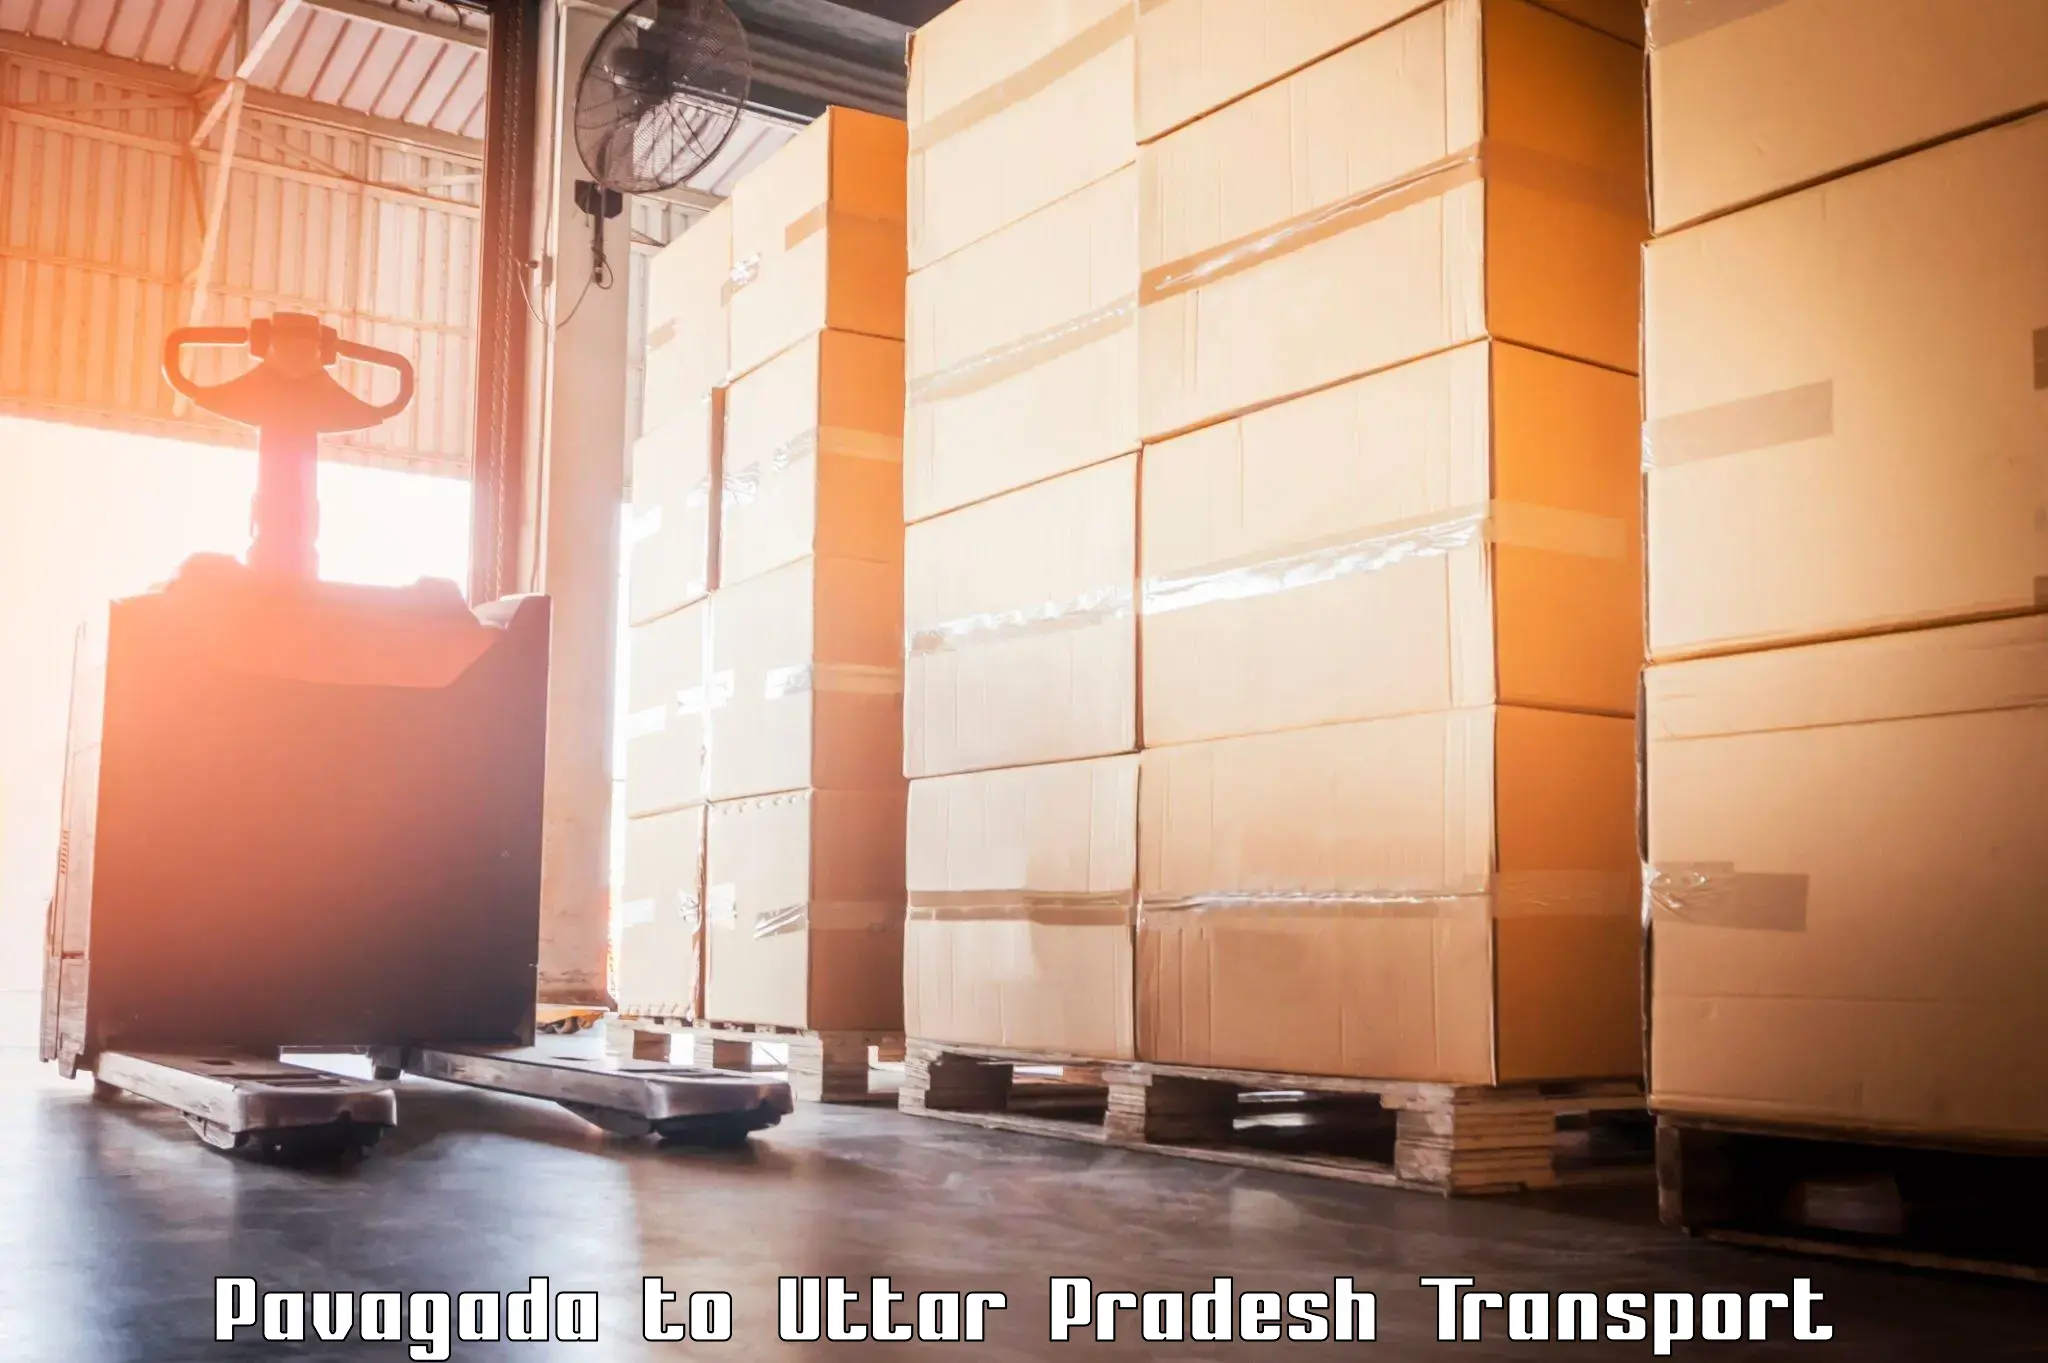 Cargo transportation services Pavagada to Ramnagar Varanasi